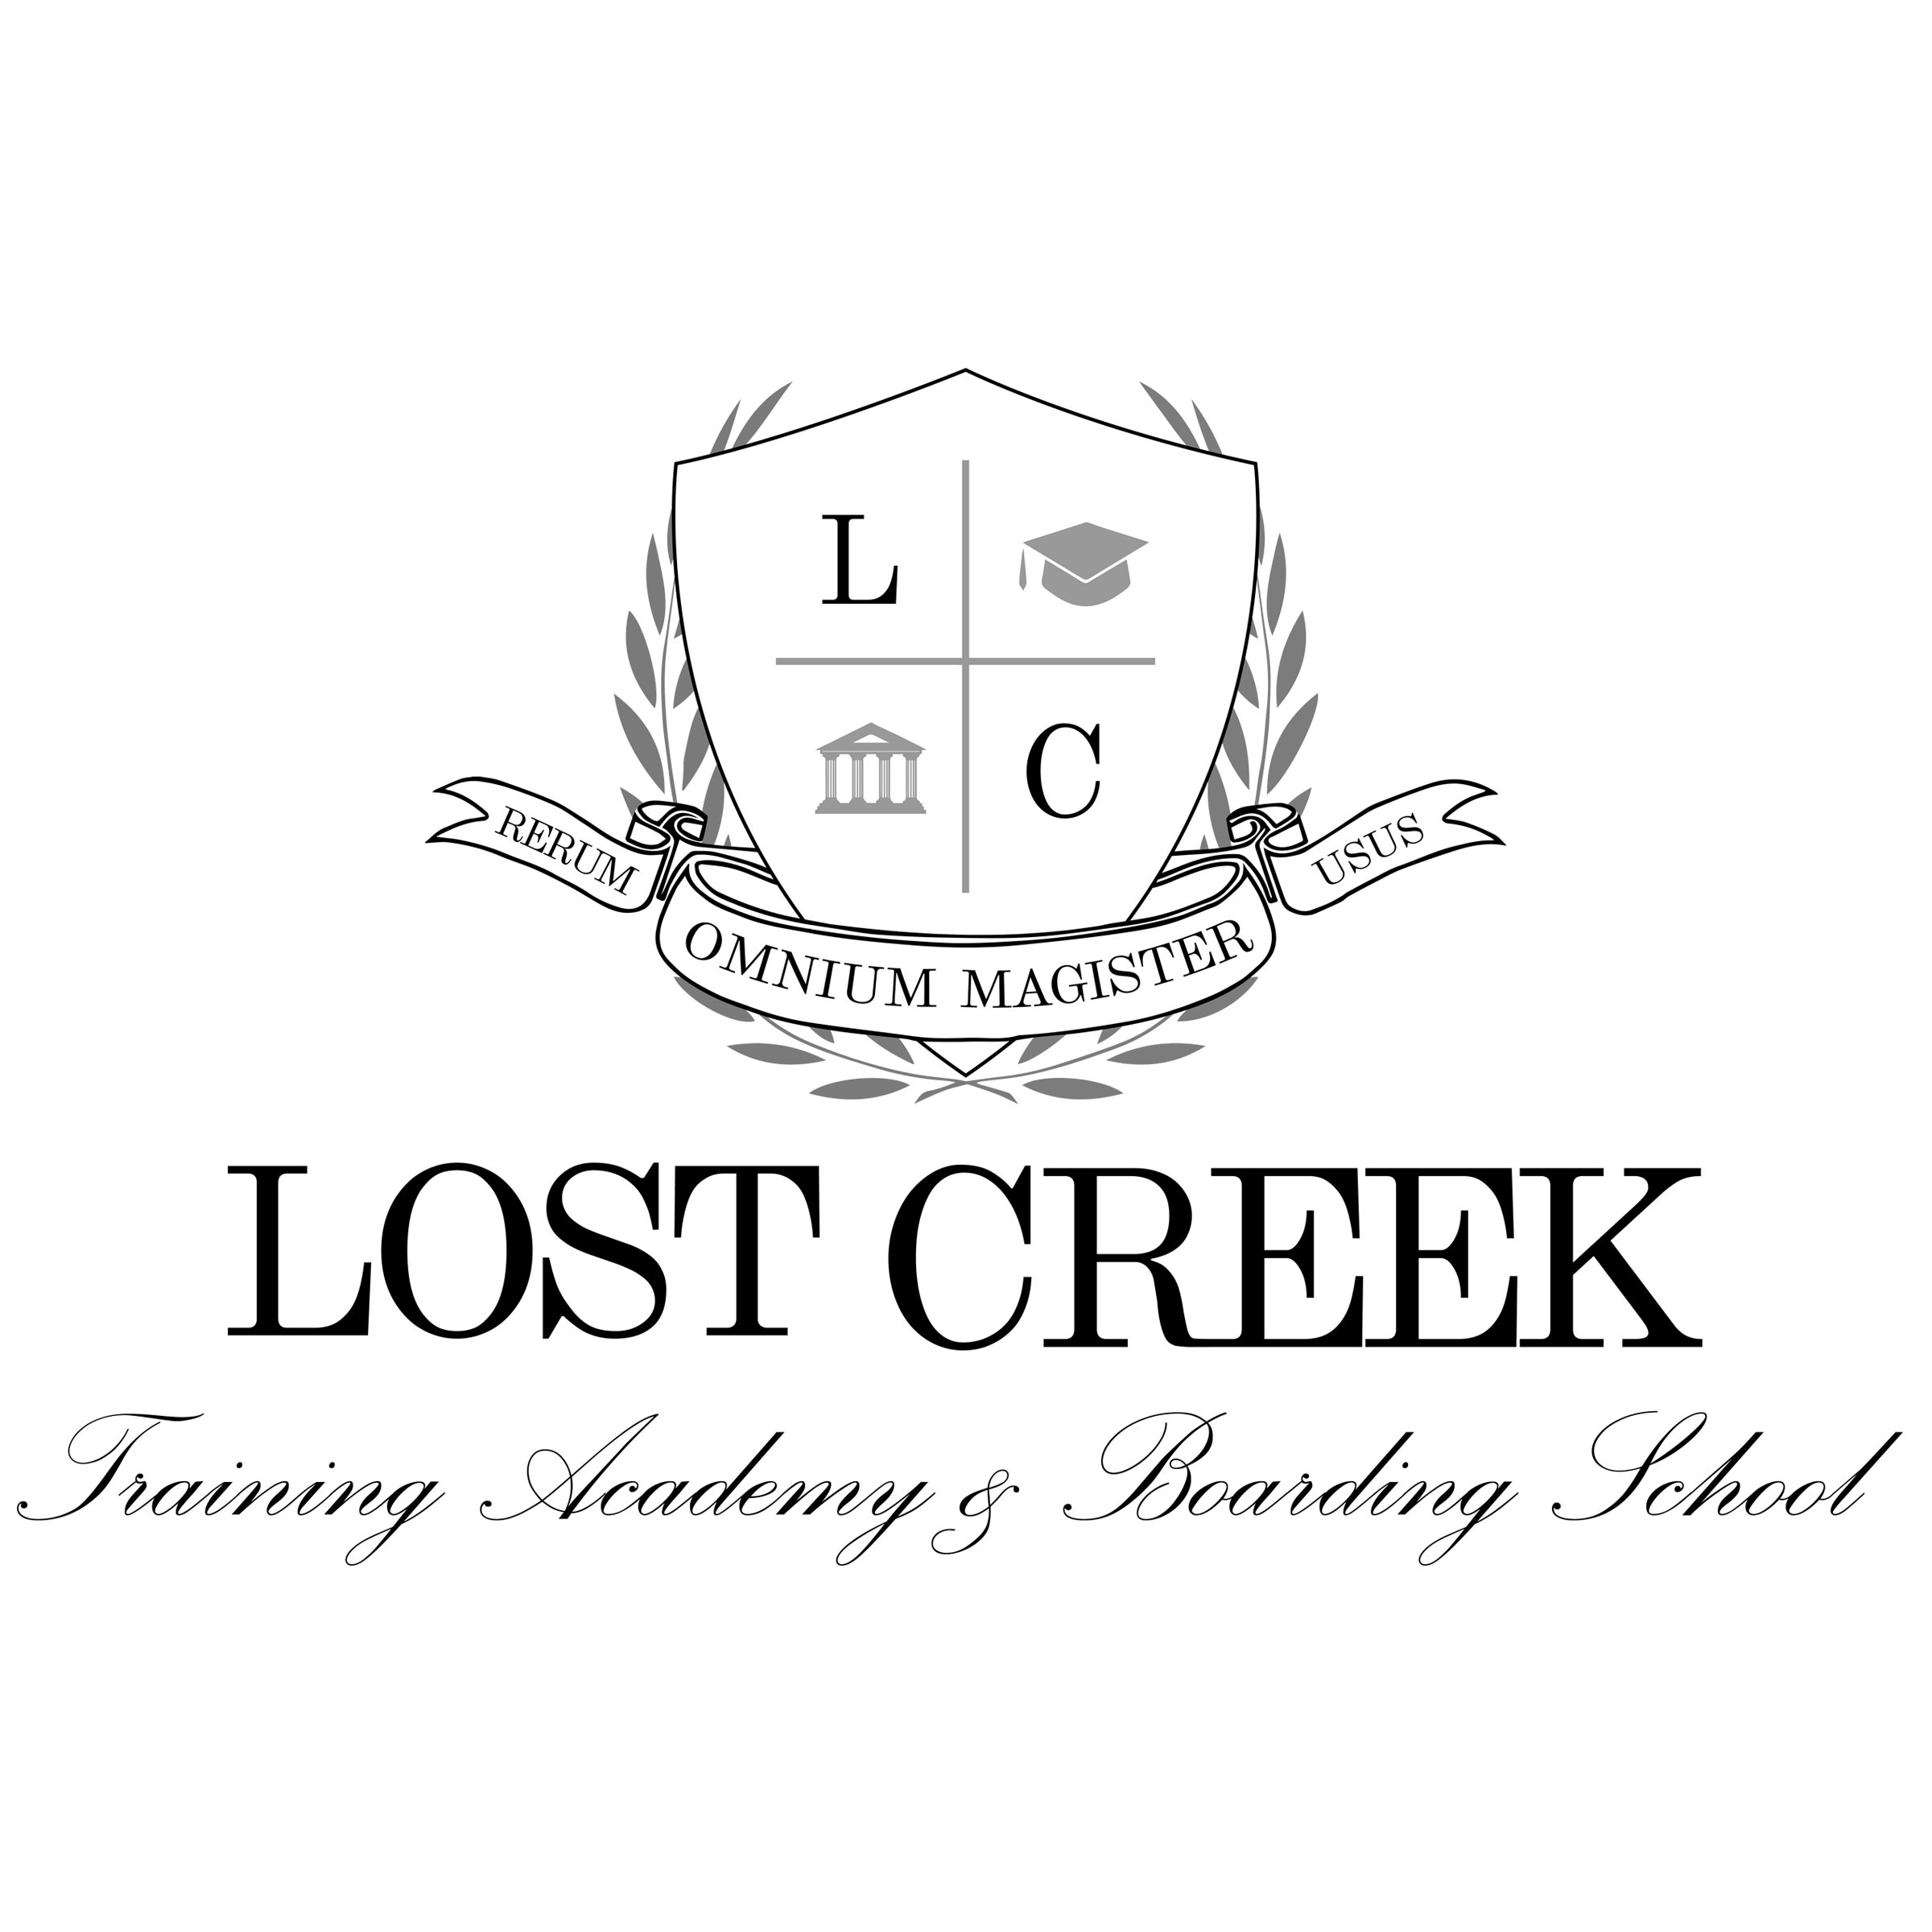 Dog Training - Lost Creek Training Academy & Boarding School